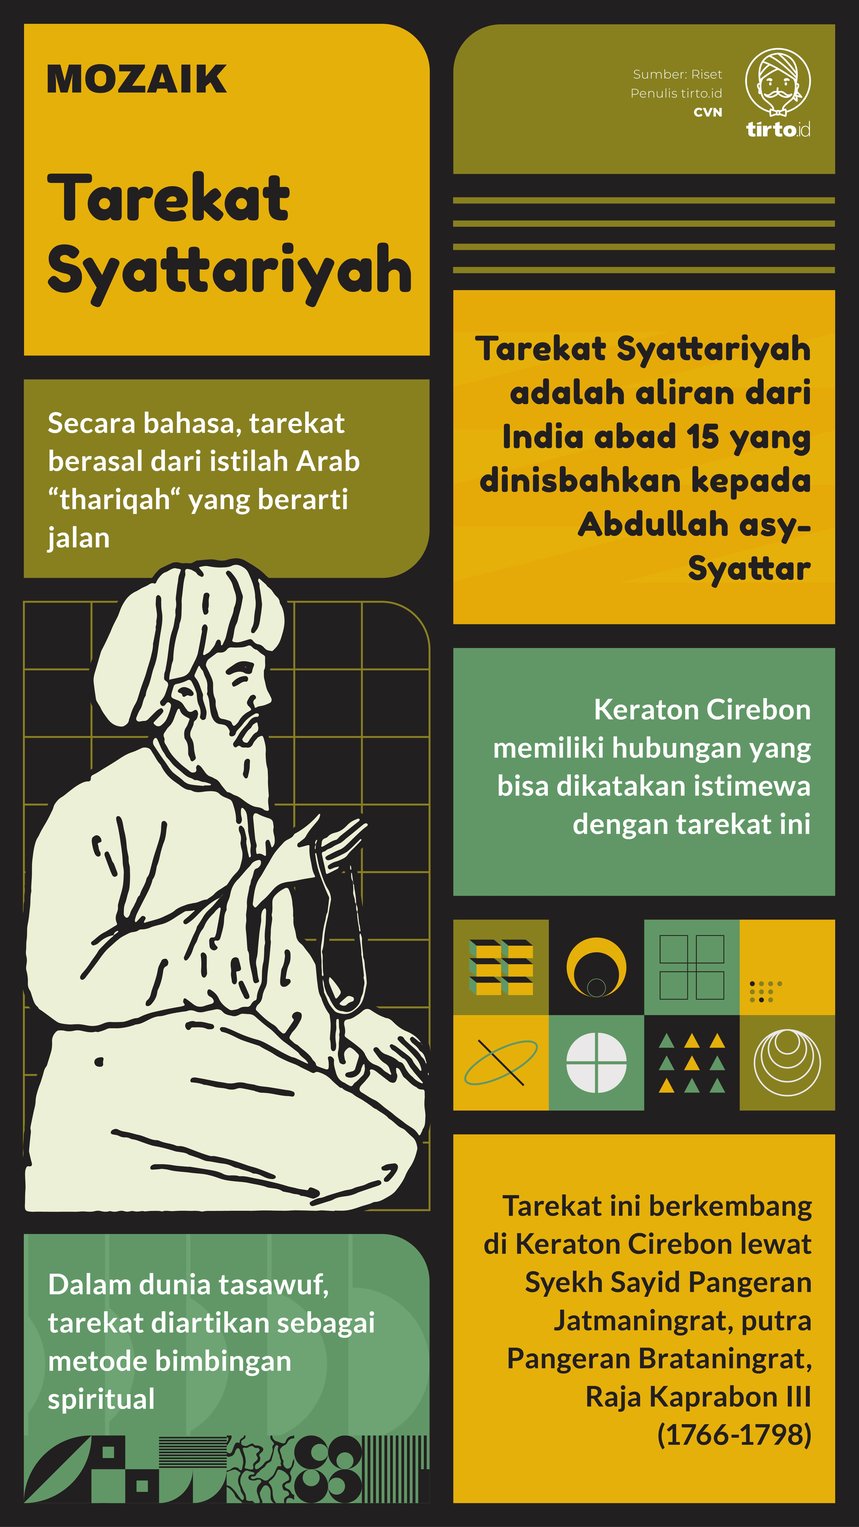 Infografik Mozaik Tarekat Syattariyah